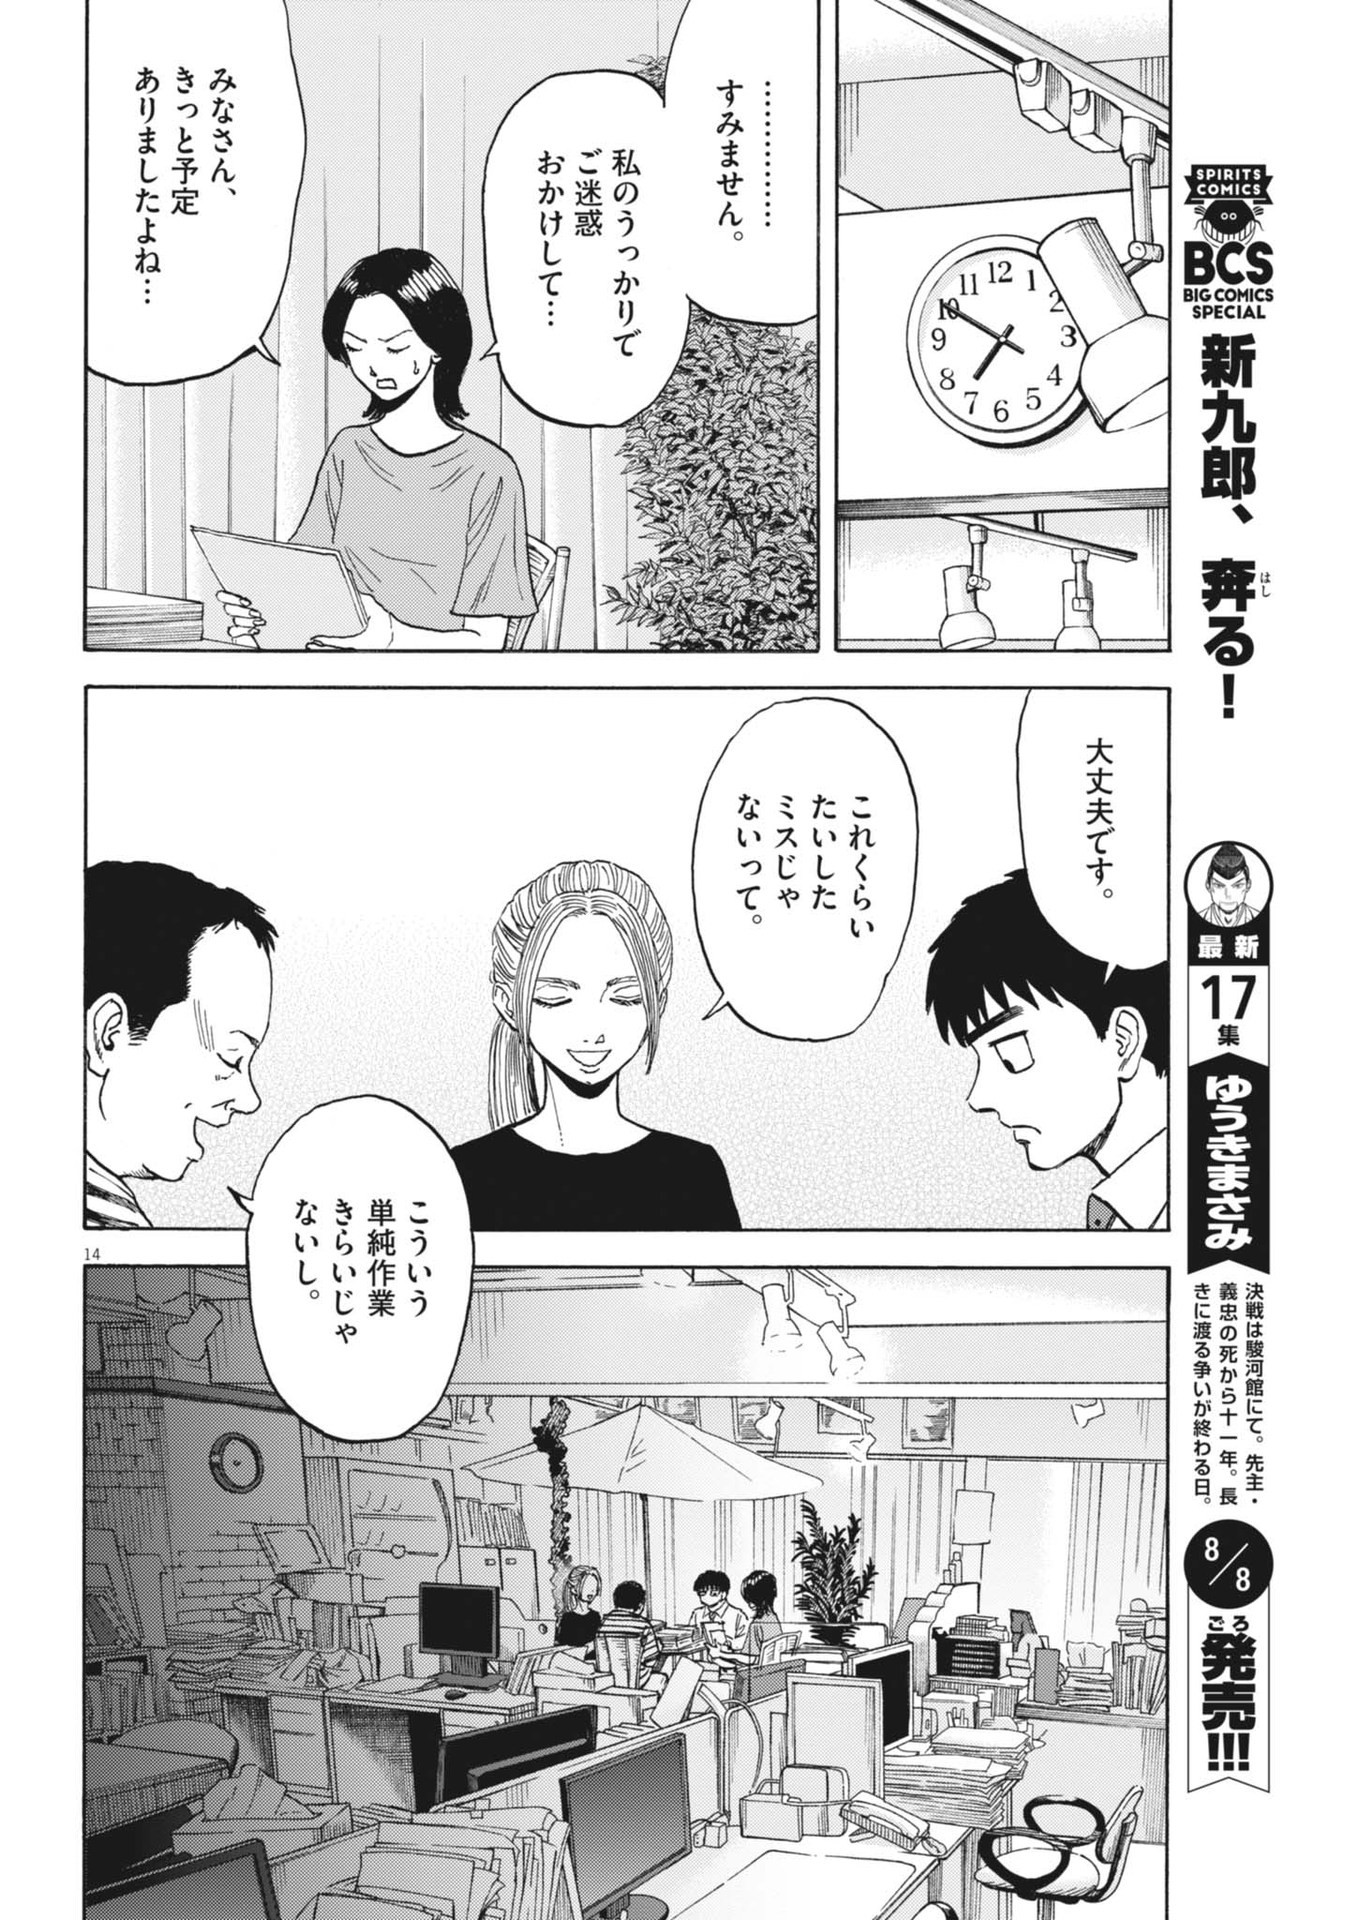 Robou no Fujii – Idai Naru Bonjin kara no Tayori - Chapter 27 - Page 14